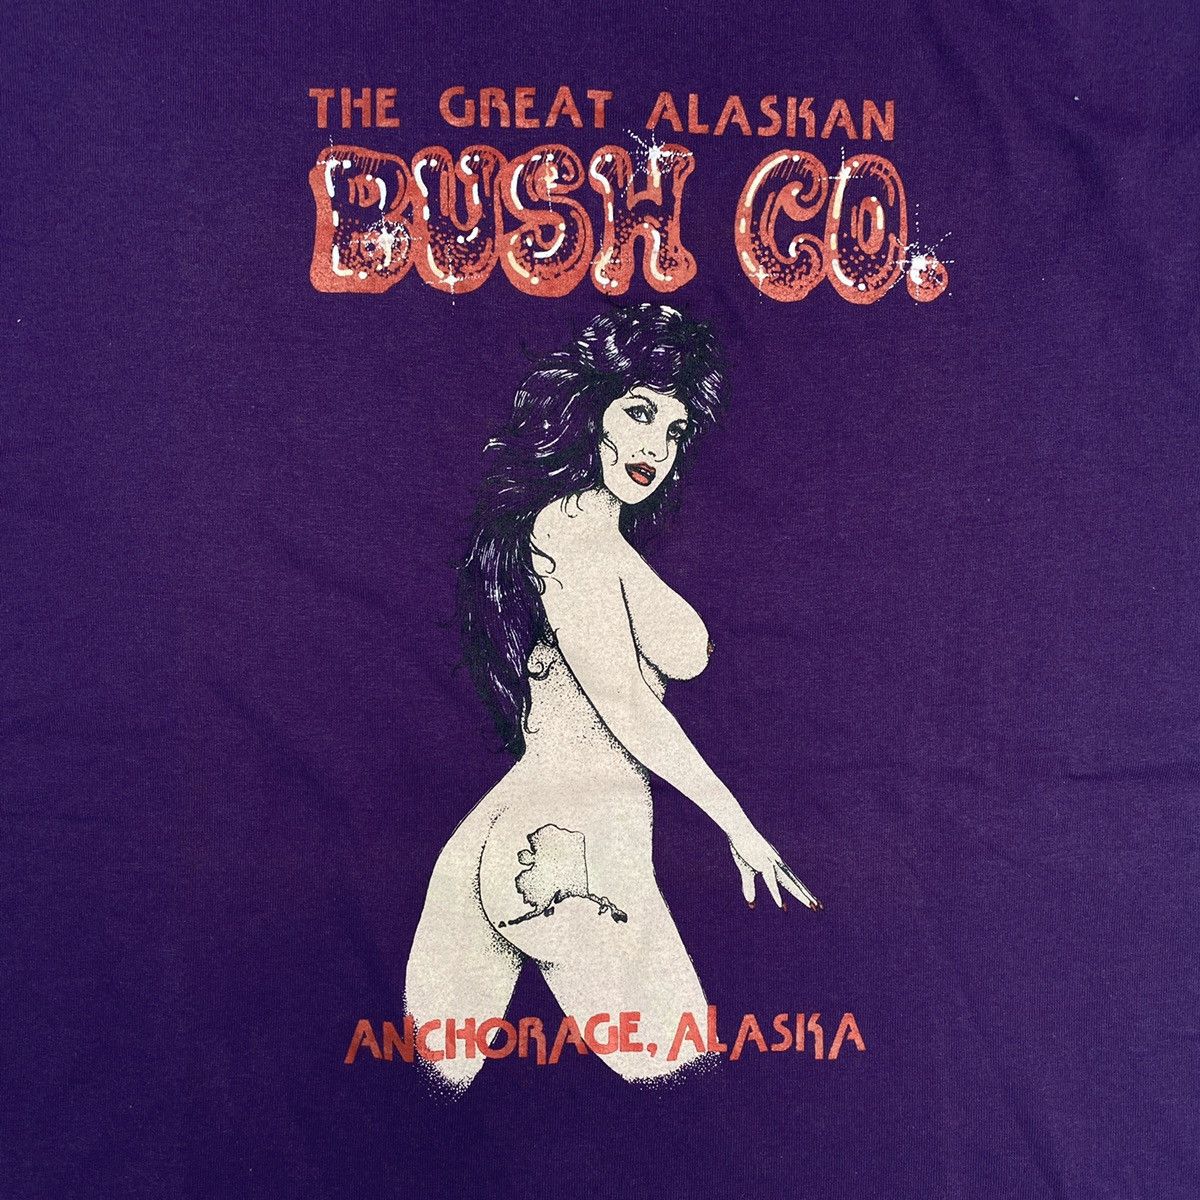 Vintage Vintage 80’s The Great Alaskan “Bush Co.” T-Shirt Size US L / EU 52-54 / 3 - 2 Preview